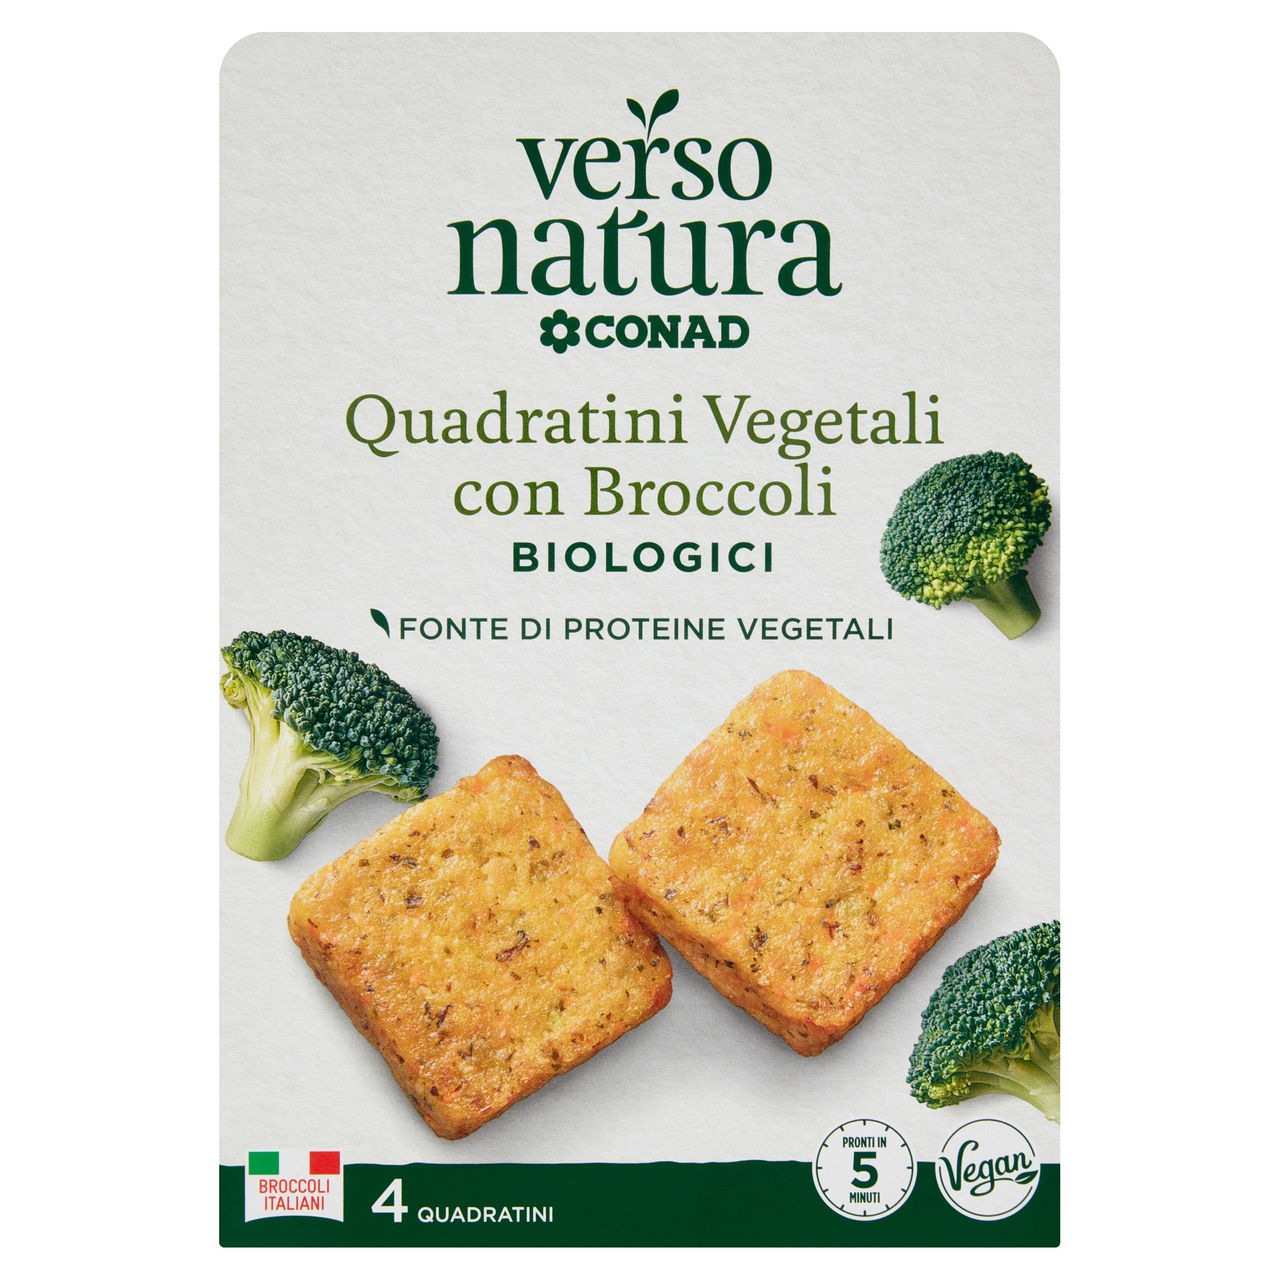 CONAD VERSO NATURA Quadratini Vegetali con Broccoli Biologici 4 Quadratini 160 g